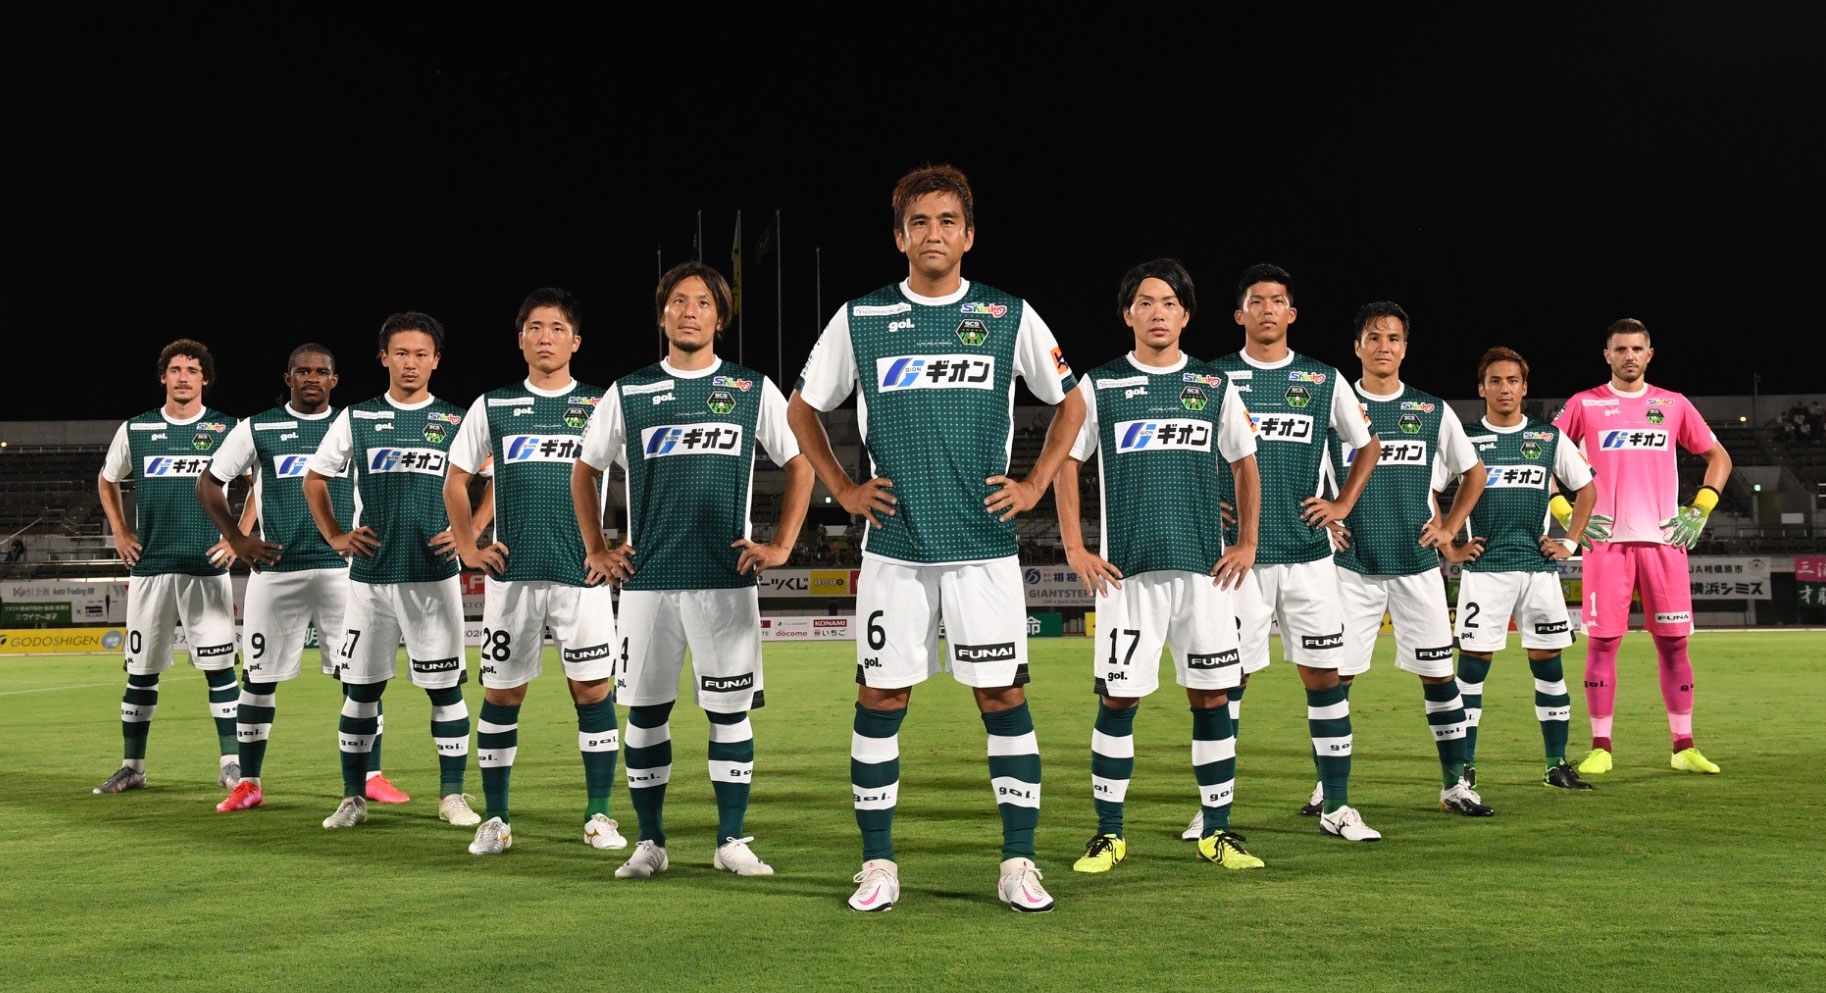 株式会社 緑信はサッカーJリーグSC相模原のオフィシャルスポンサーです。